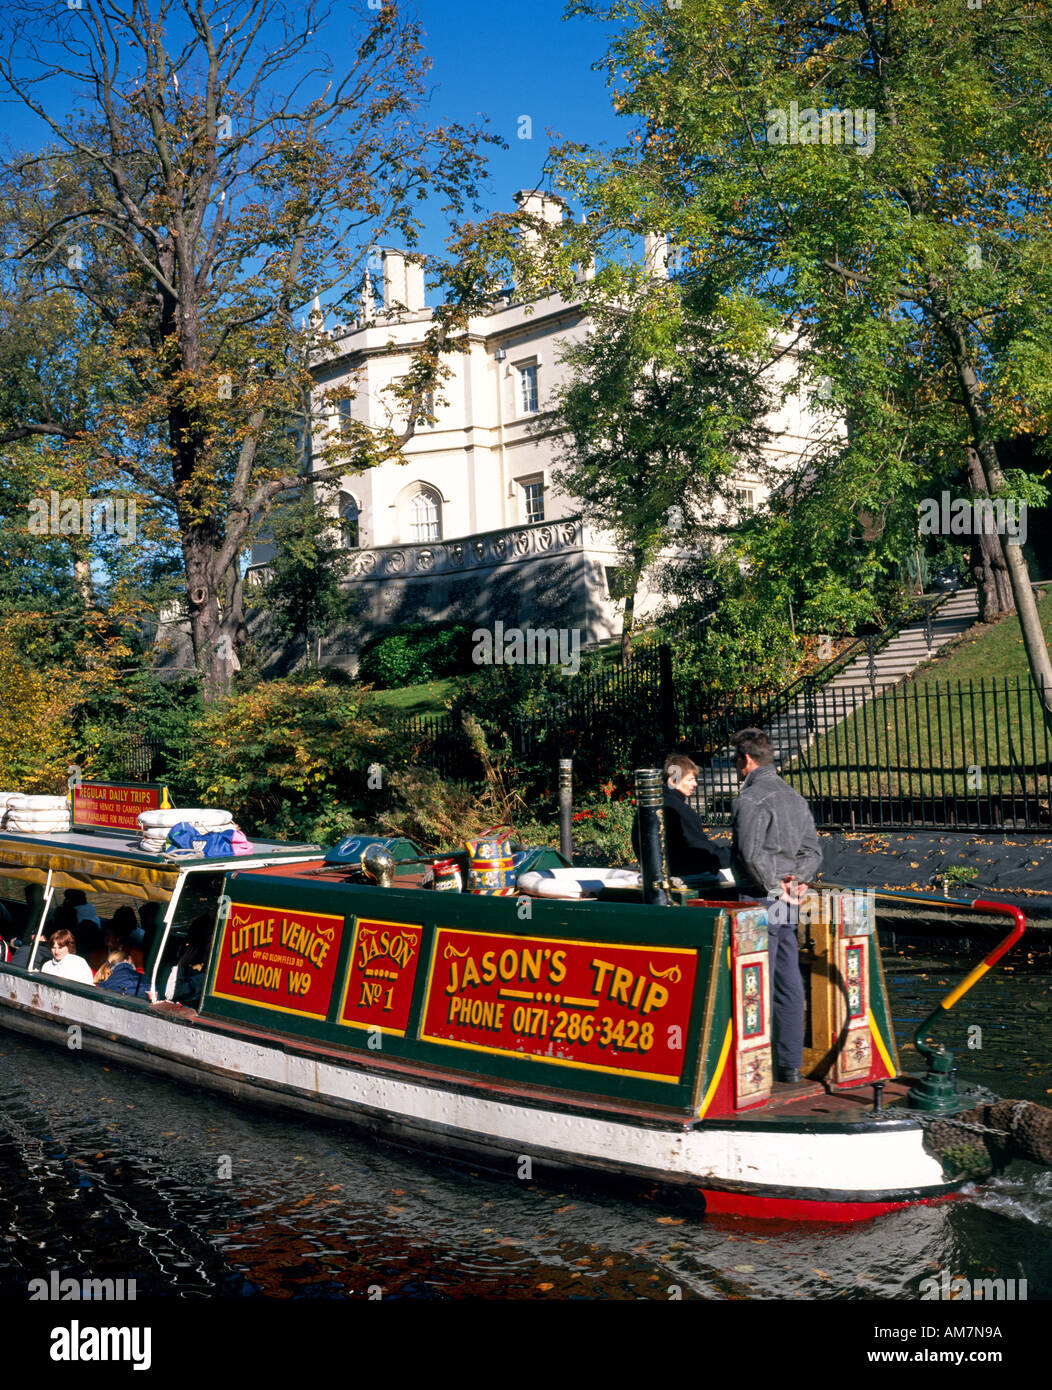 Belle villa de style Regency House par Regent s Canal en automne avec Jason s barge Voyage Angleterre Londres NW1 Banque D'Images